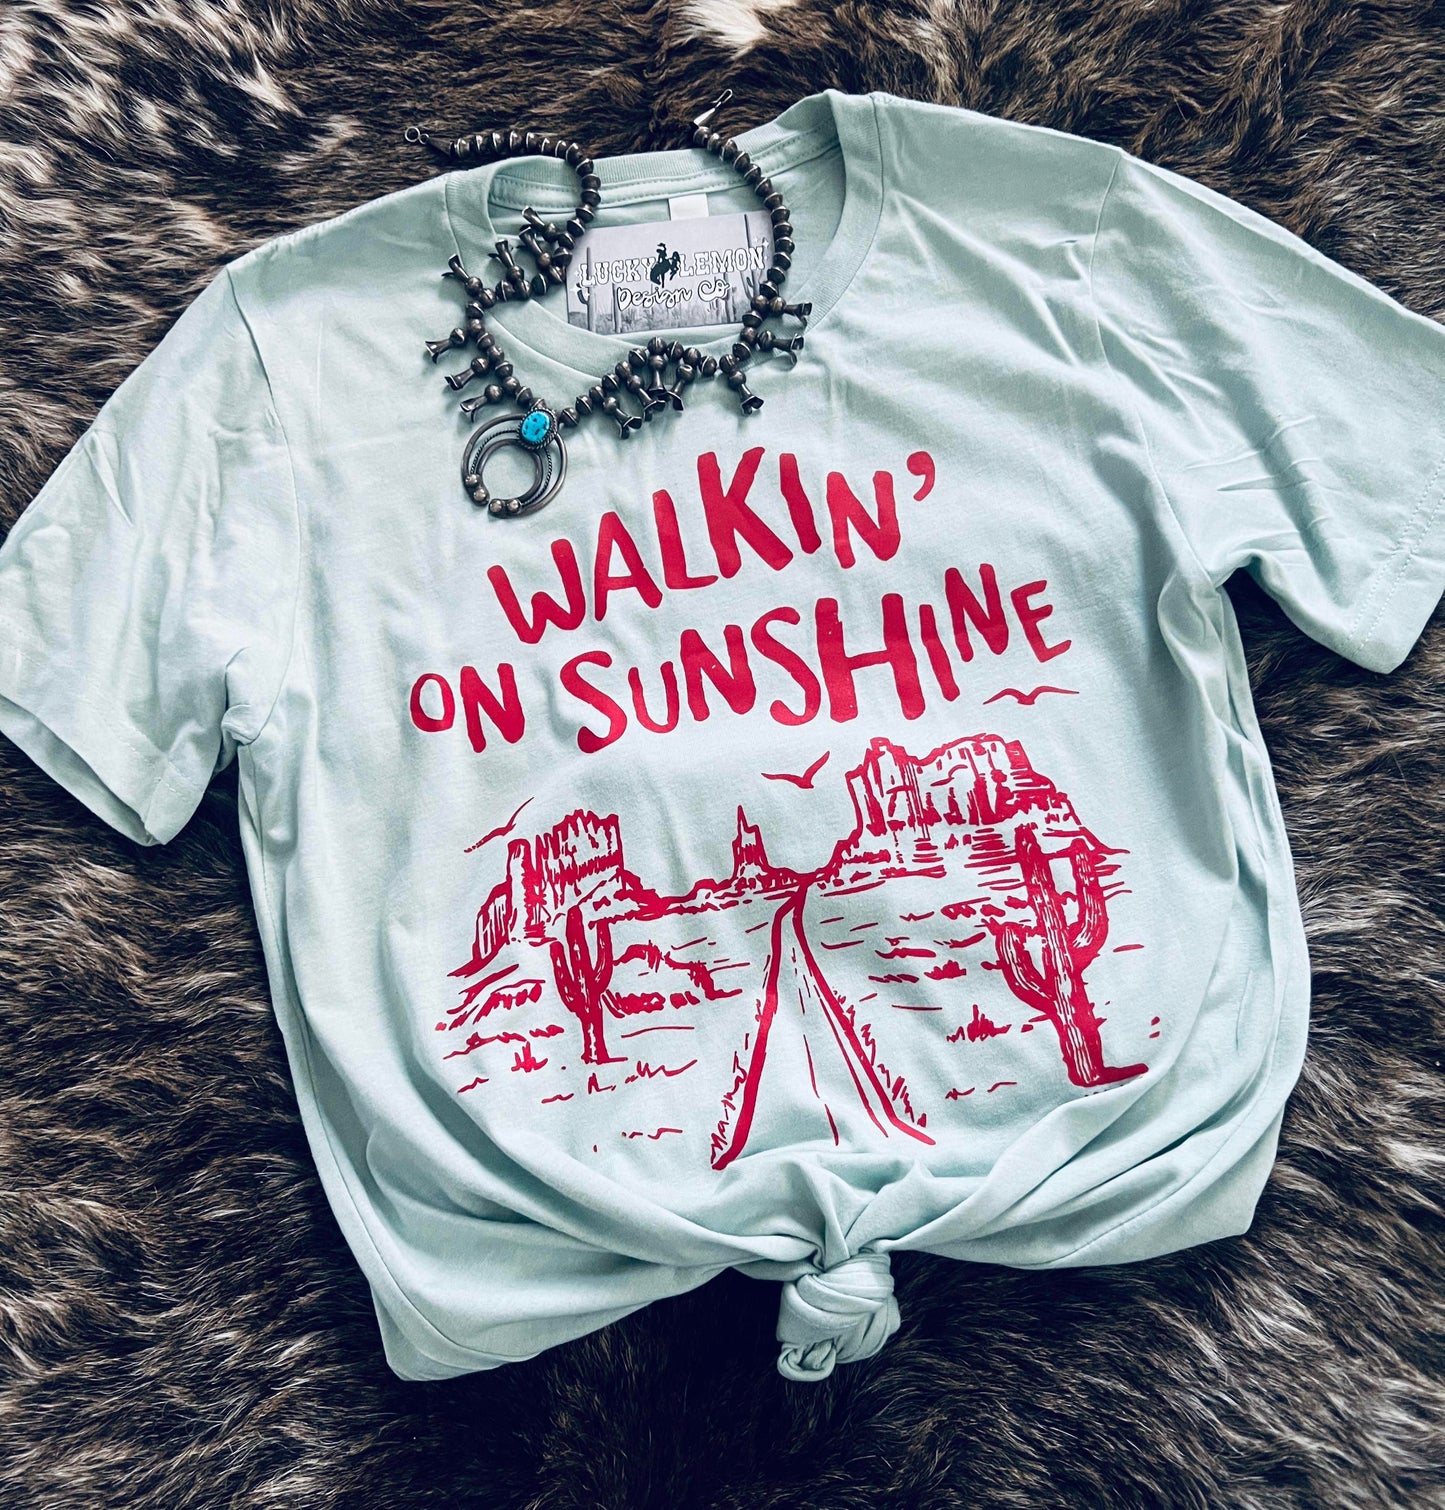 Walkin' on sunshine tshirt